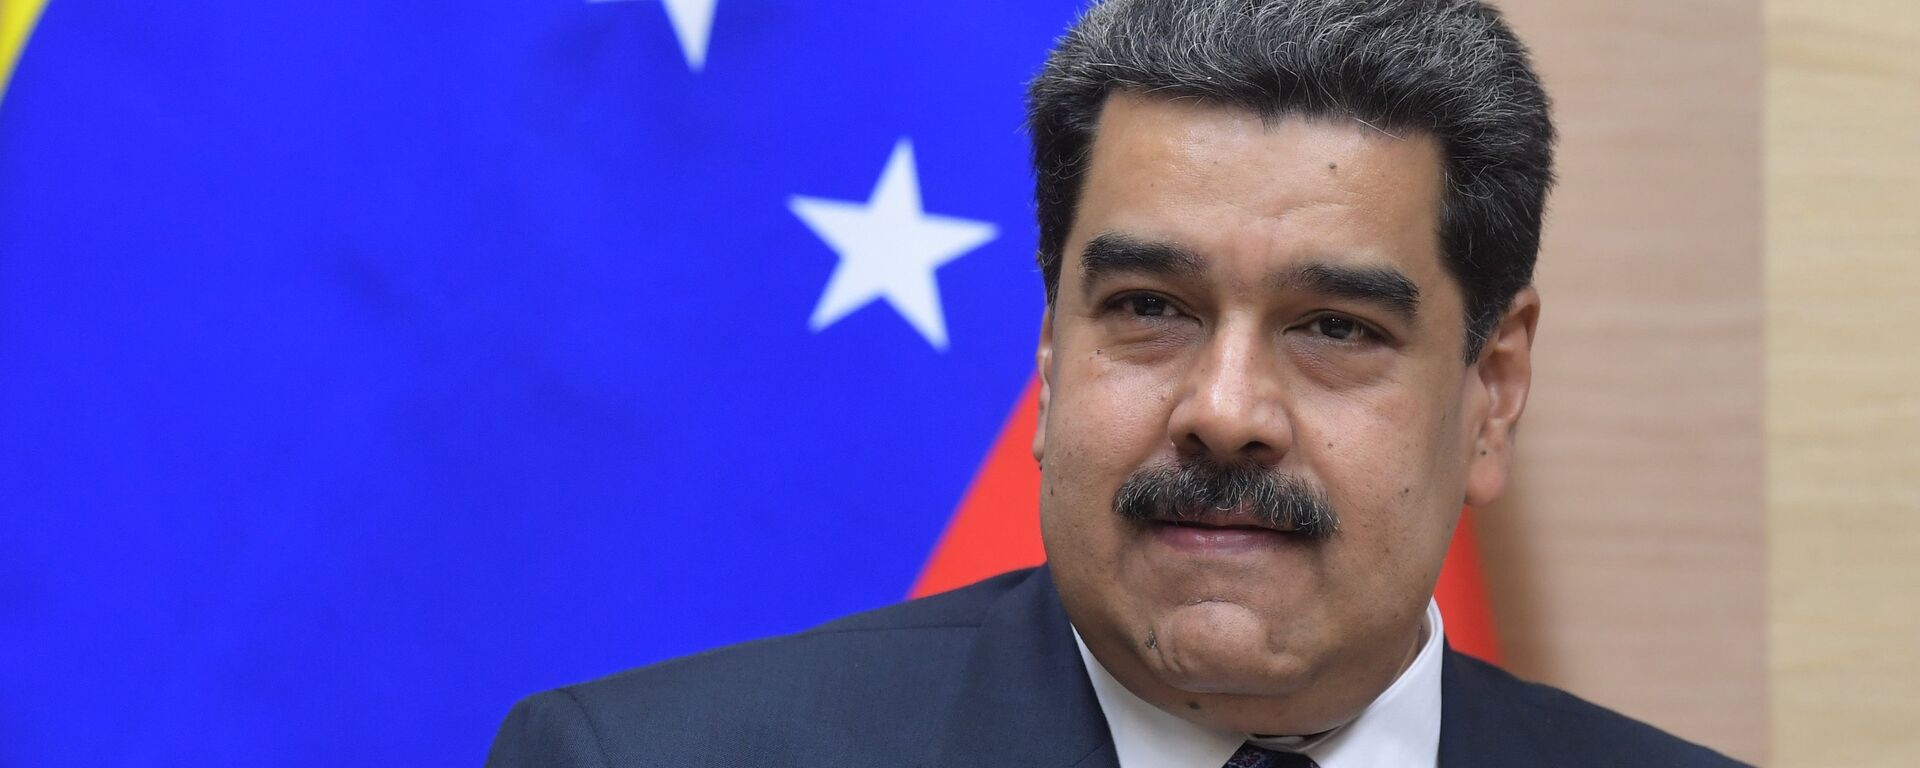 Nicolás Maduro, presidente de Venezuela - Sputnik Mundo, 1920, 06.12.2021